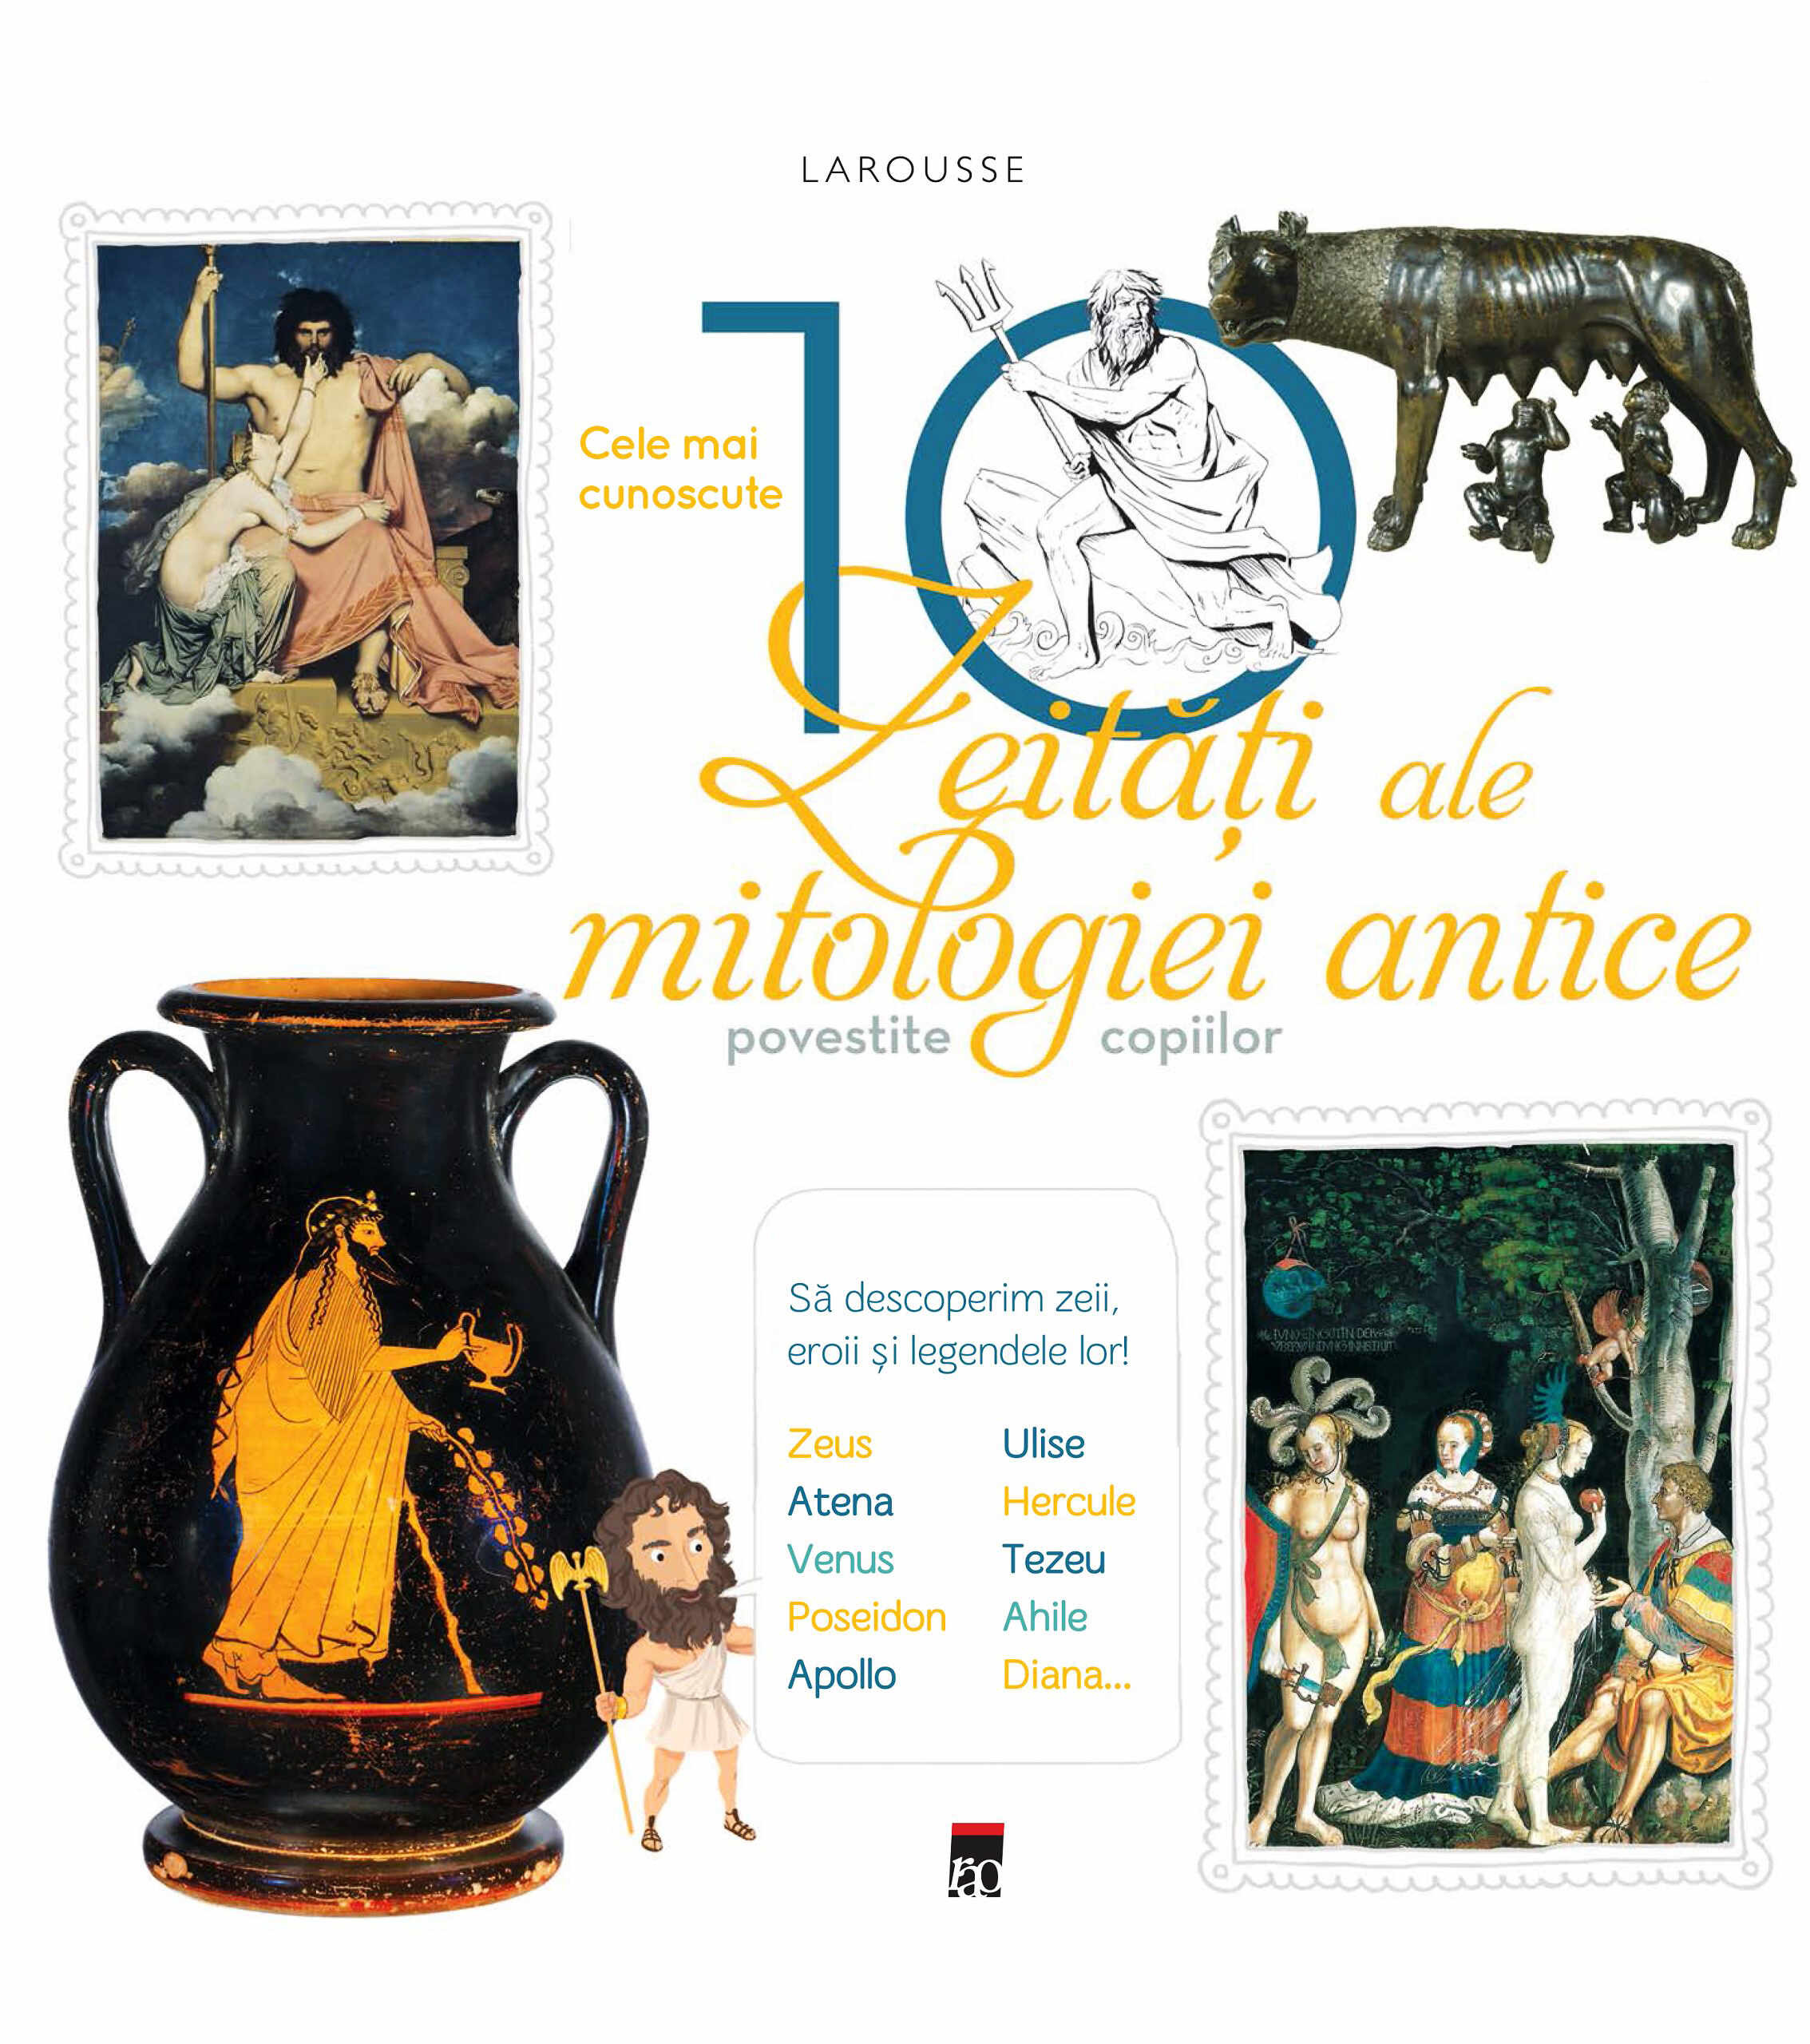 Larousse. Cele mai cunoscute 10 zeitati ale mitologiei antice povestite copiilor | 